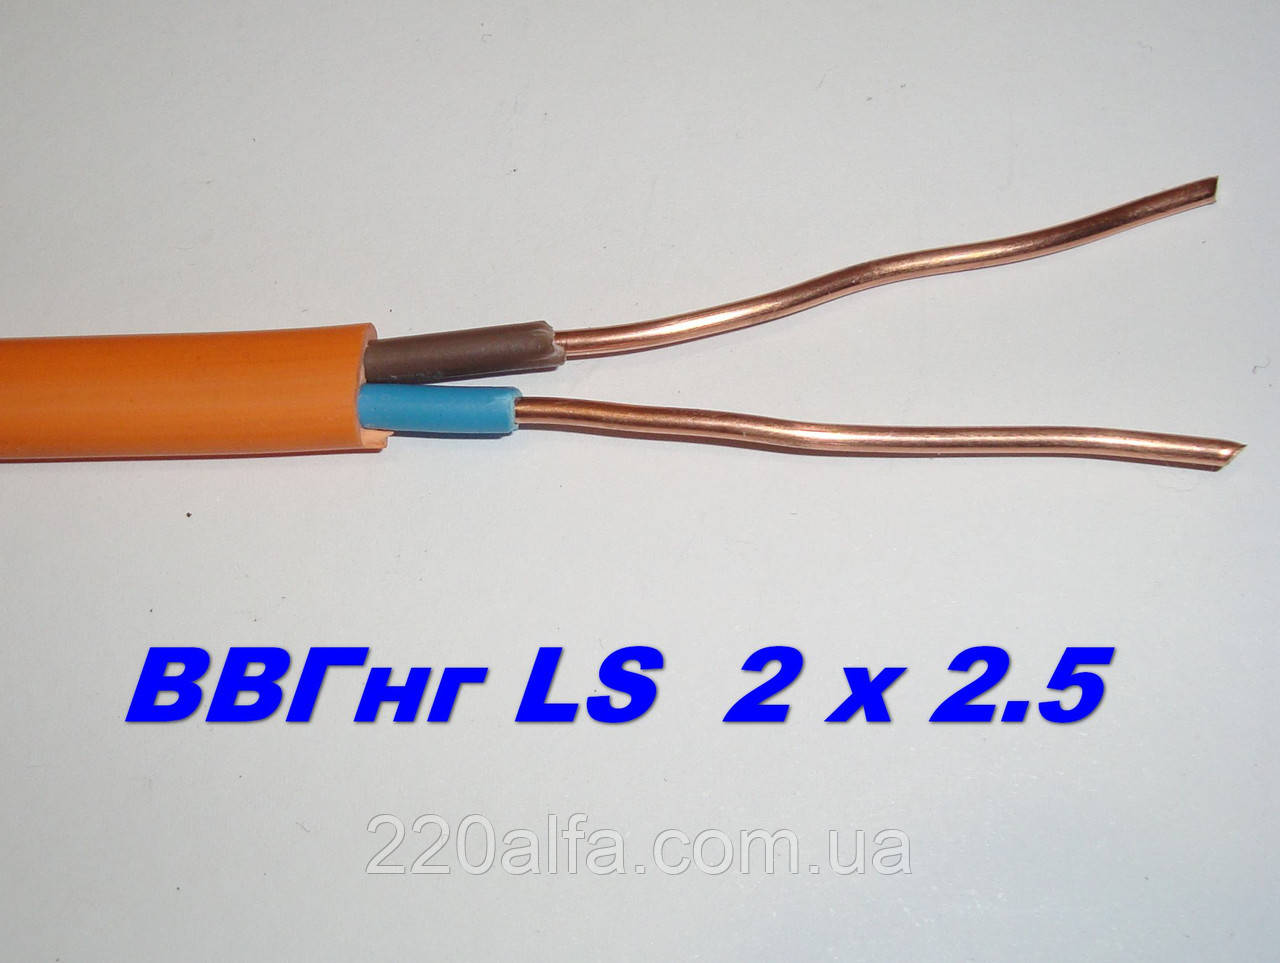 Силовий мідний кабель ВВГНГД 2х2.5 для надійної електропроводки, повноцінний переріз. Одеса Каблекс.